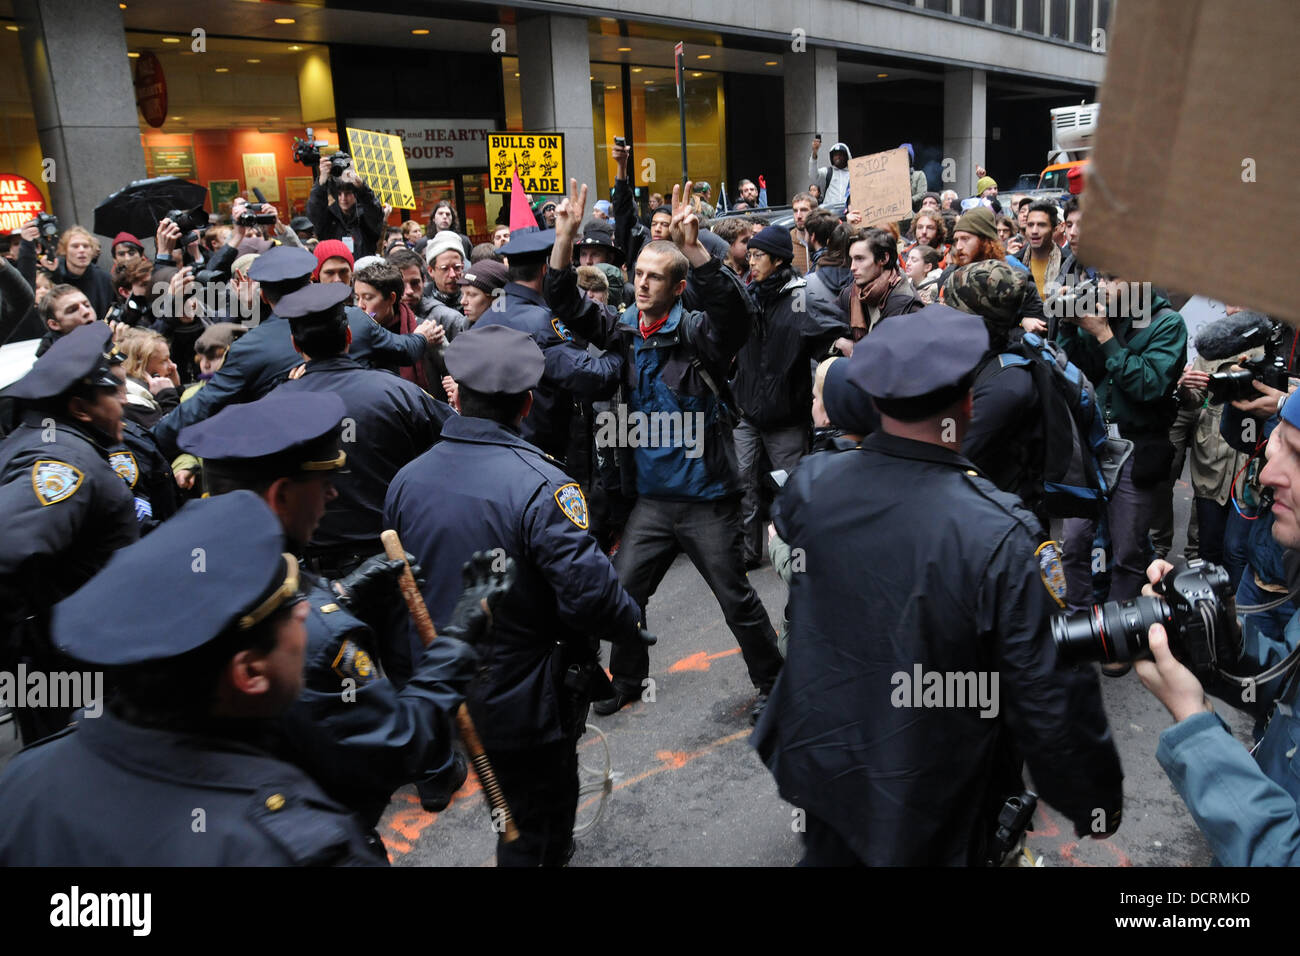 Atmosfera di occupare Wall Street circolazione marche attraverso la parte inferiore di Manhattan come si raggiunge i due mesi di proteste di New York City, Stati Uniti d'America - 17.11.11 Foto Stock